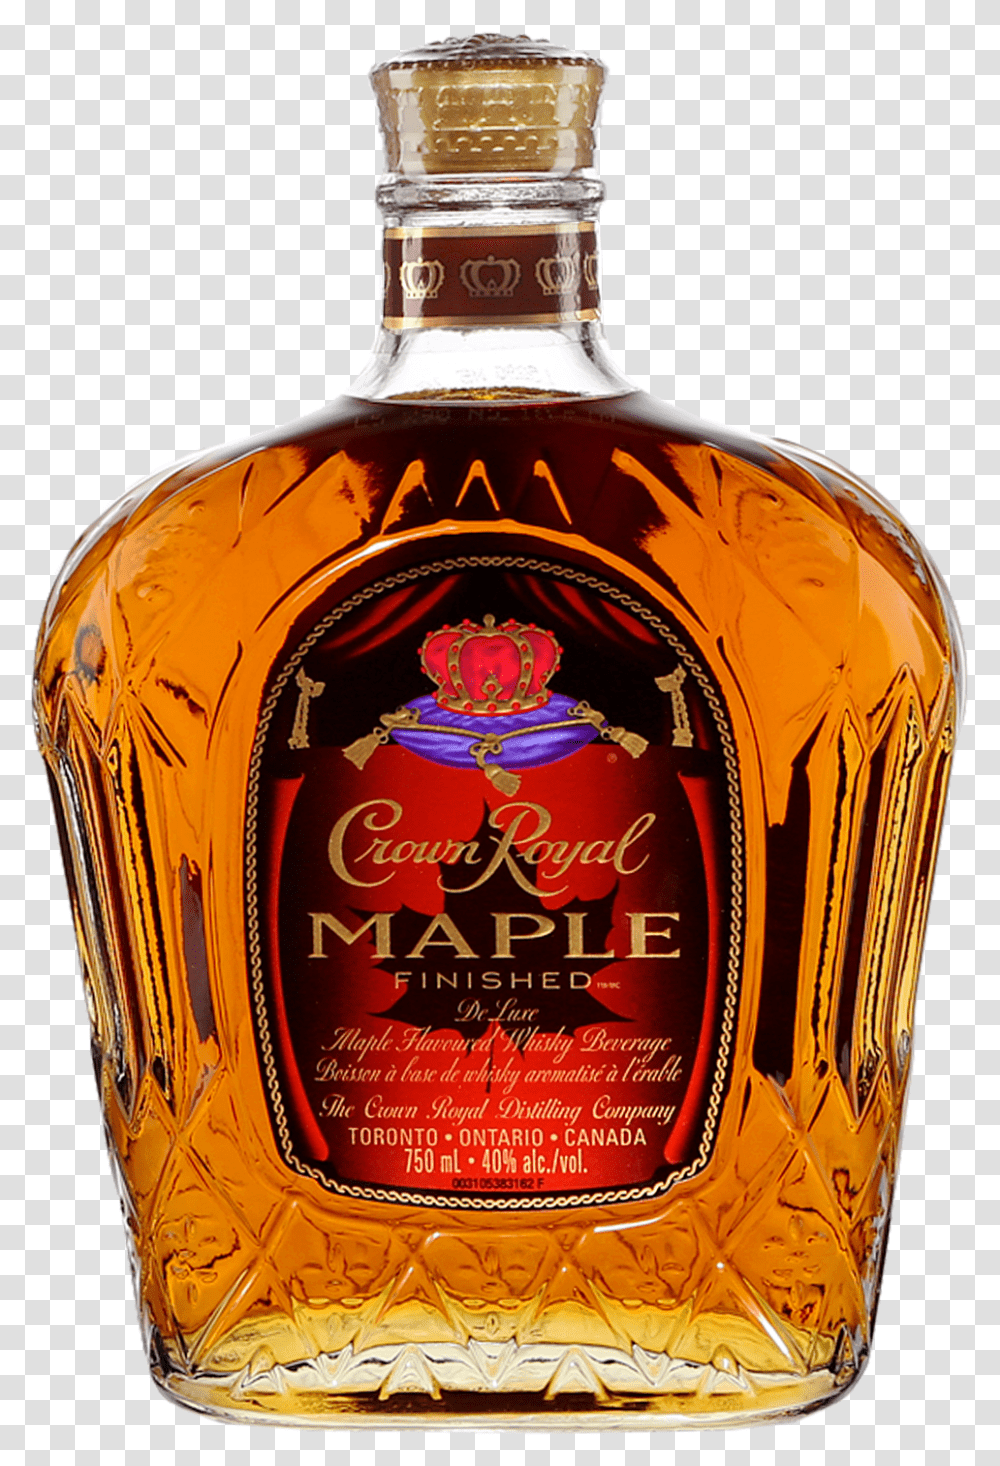 Crown Royal Maple Finished Glass Bottle, Liquor, Alcohol, Beverage, Drink Transparent Png